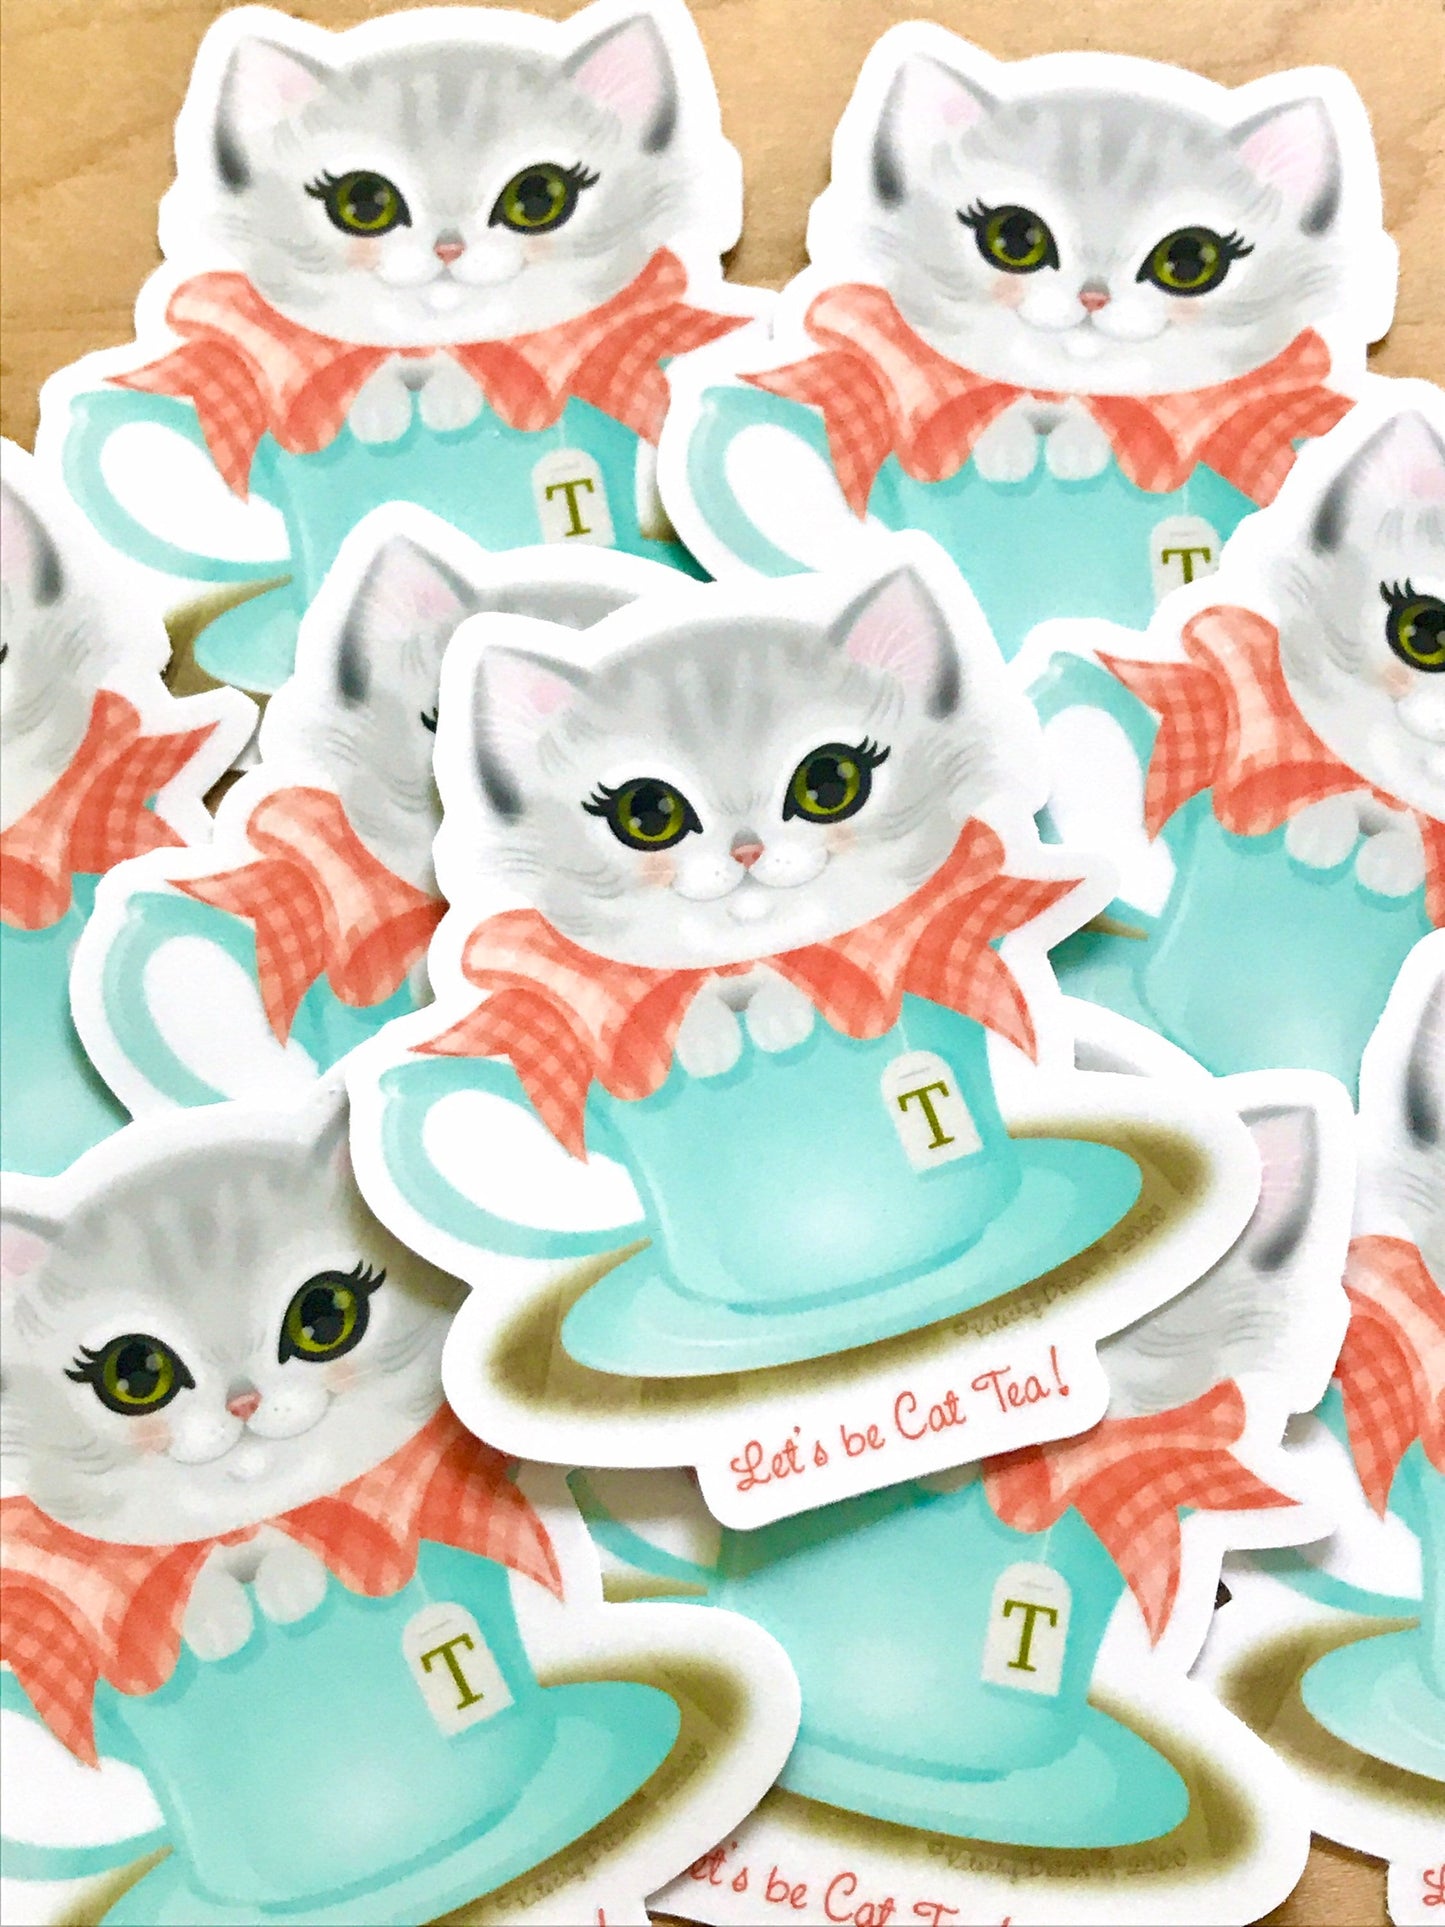 Let’s be Cat Tea vinyl sticker